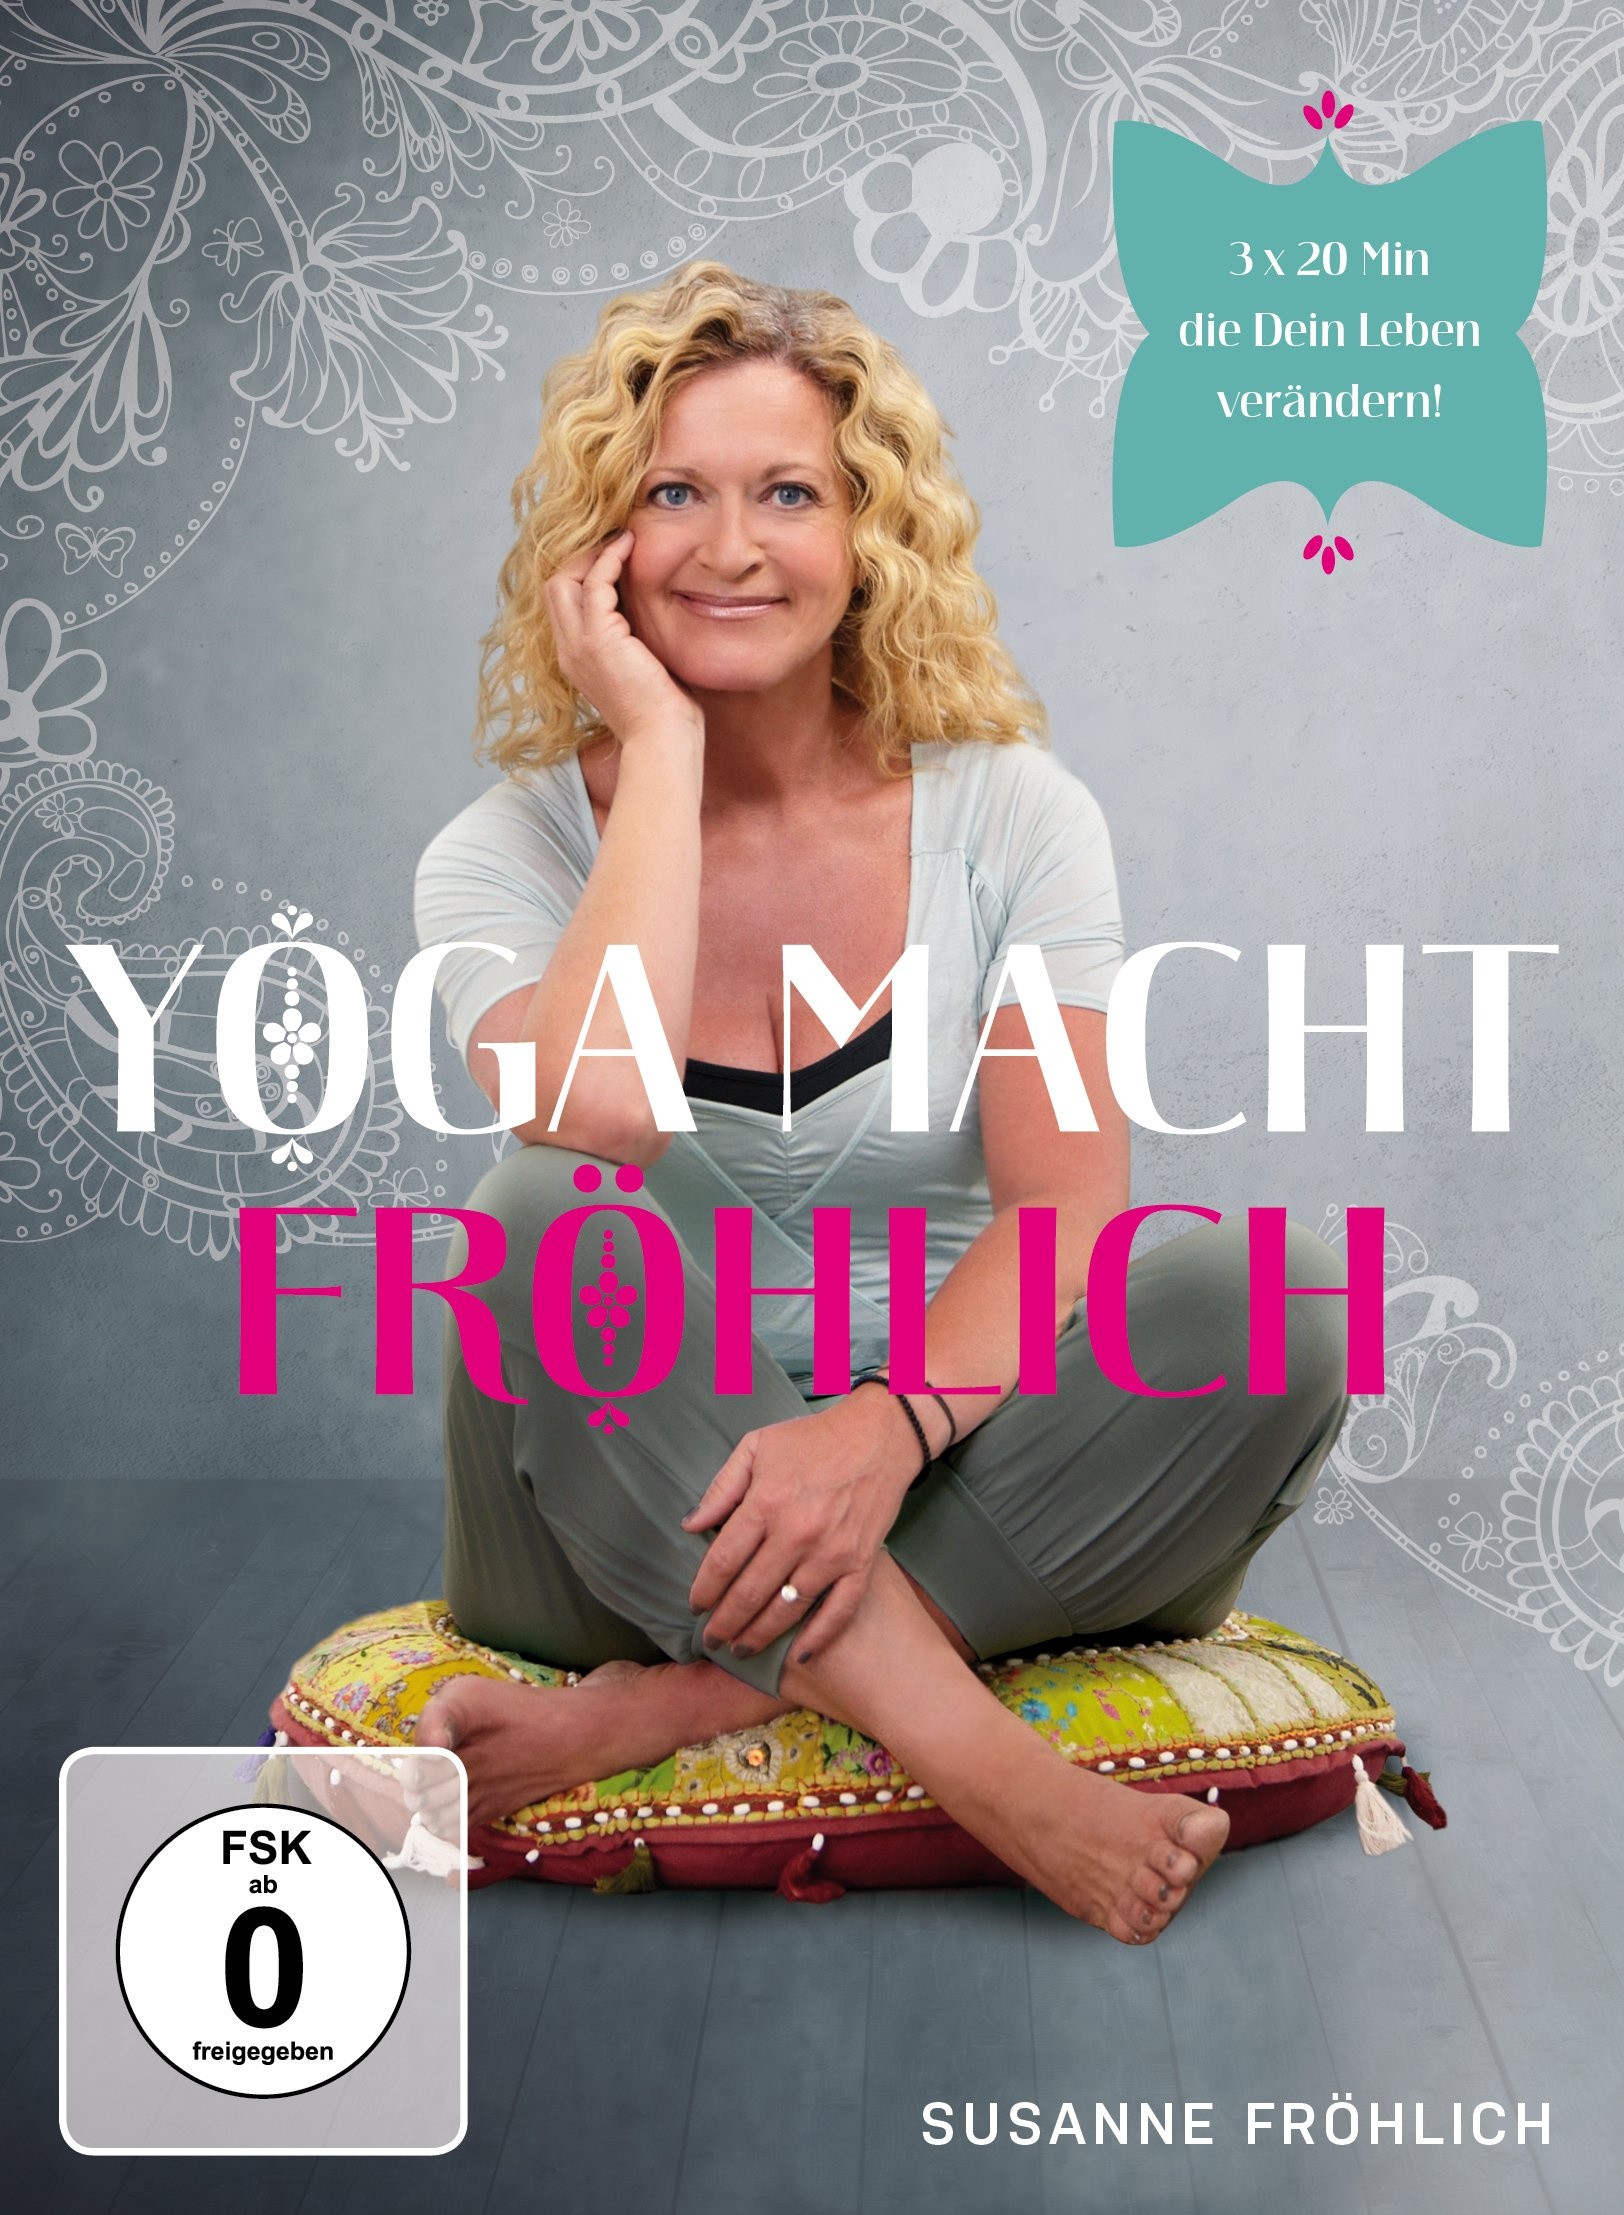 Susanne Fröhlich - Yoga macht Fröhlich (Neu differenzbesteuert)